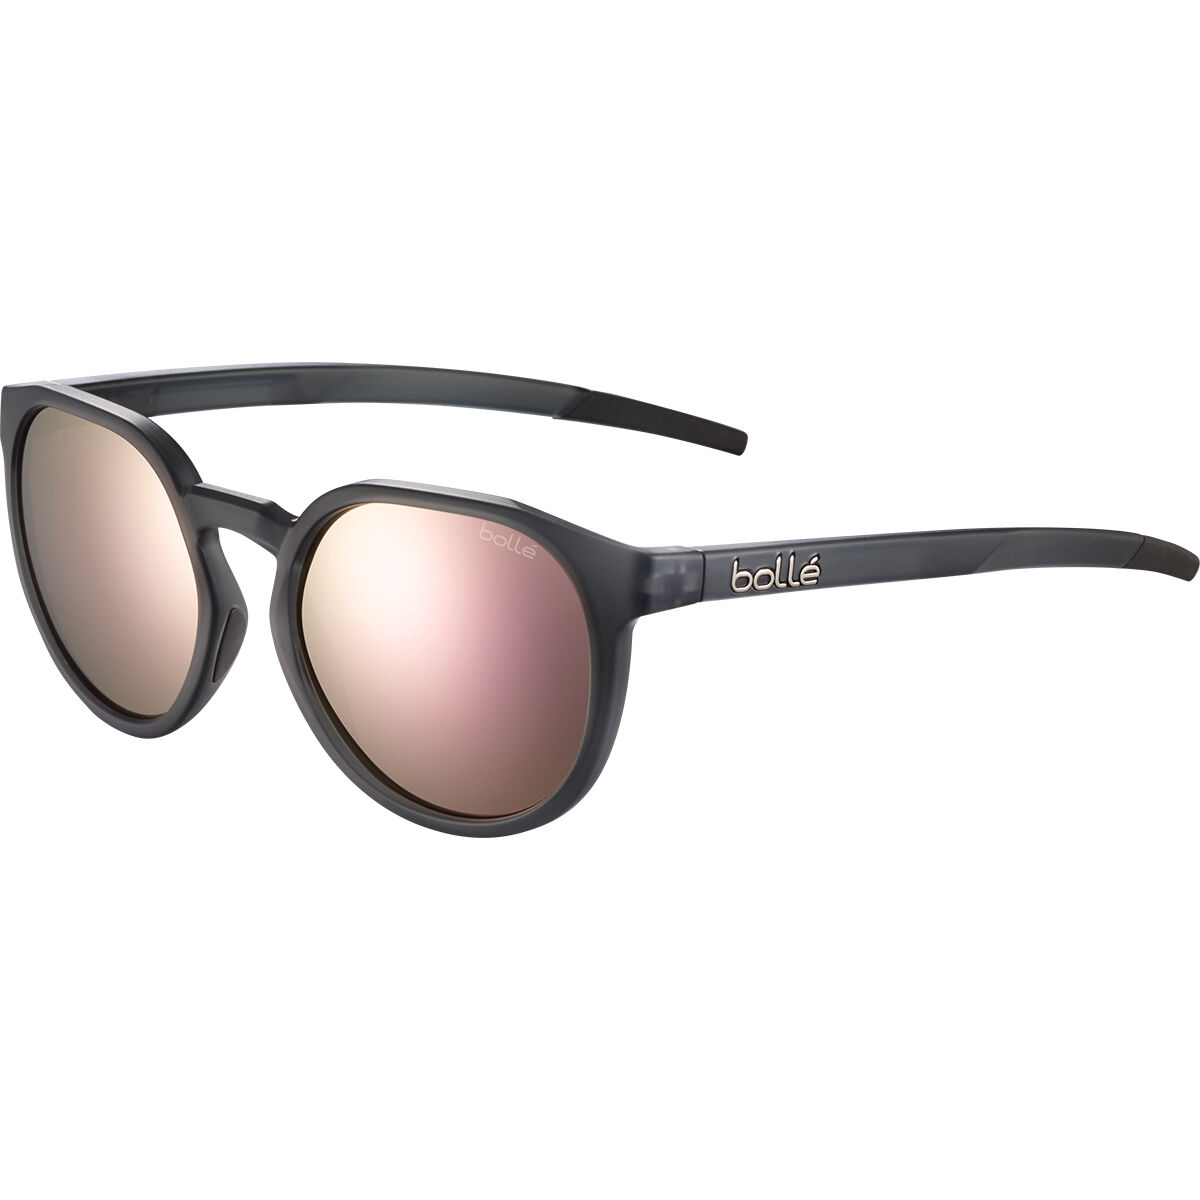 Bollé Unisex Bolt 2.0 Sunglasses, Black (Black Shiny), S UK : Amazon.co.uk:  Fashion